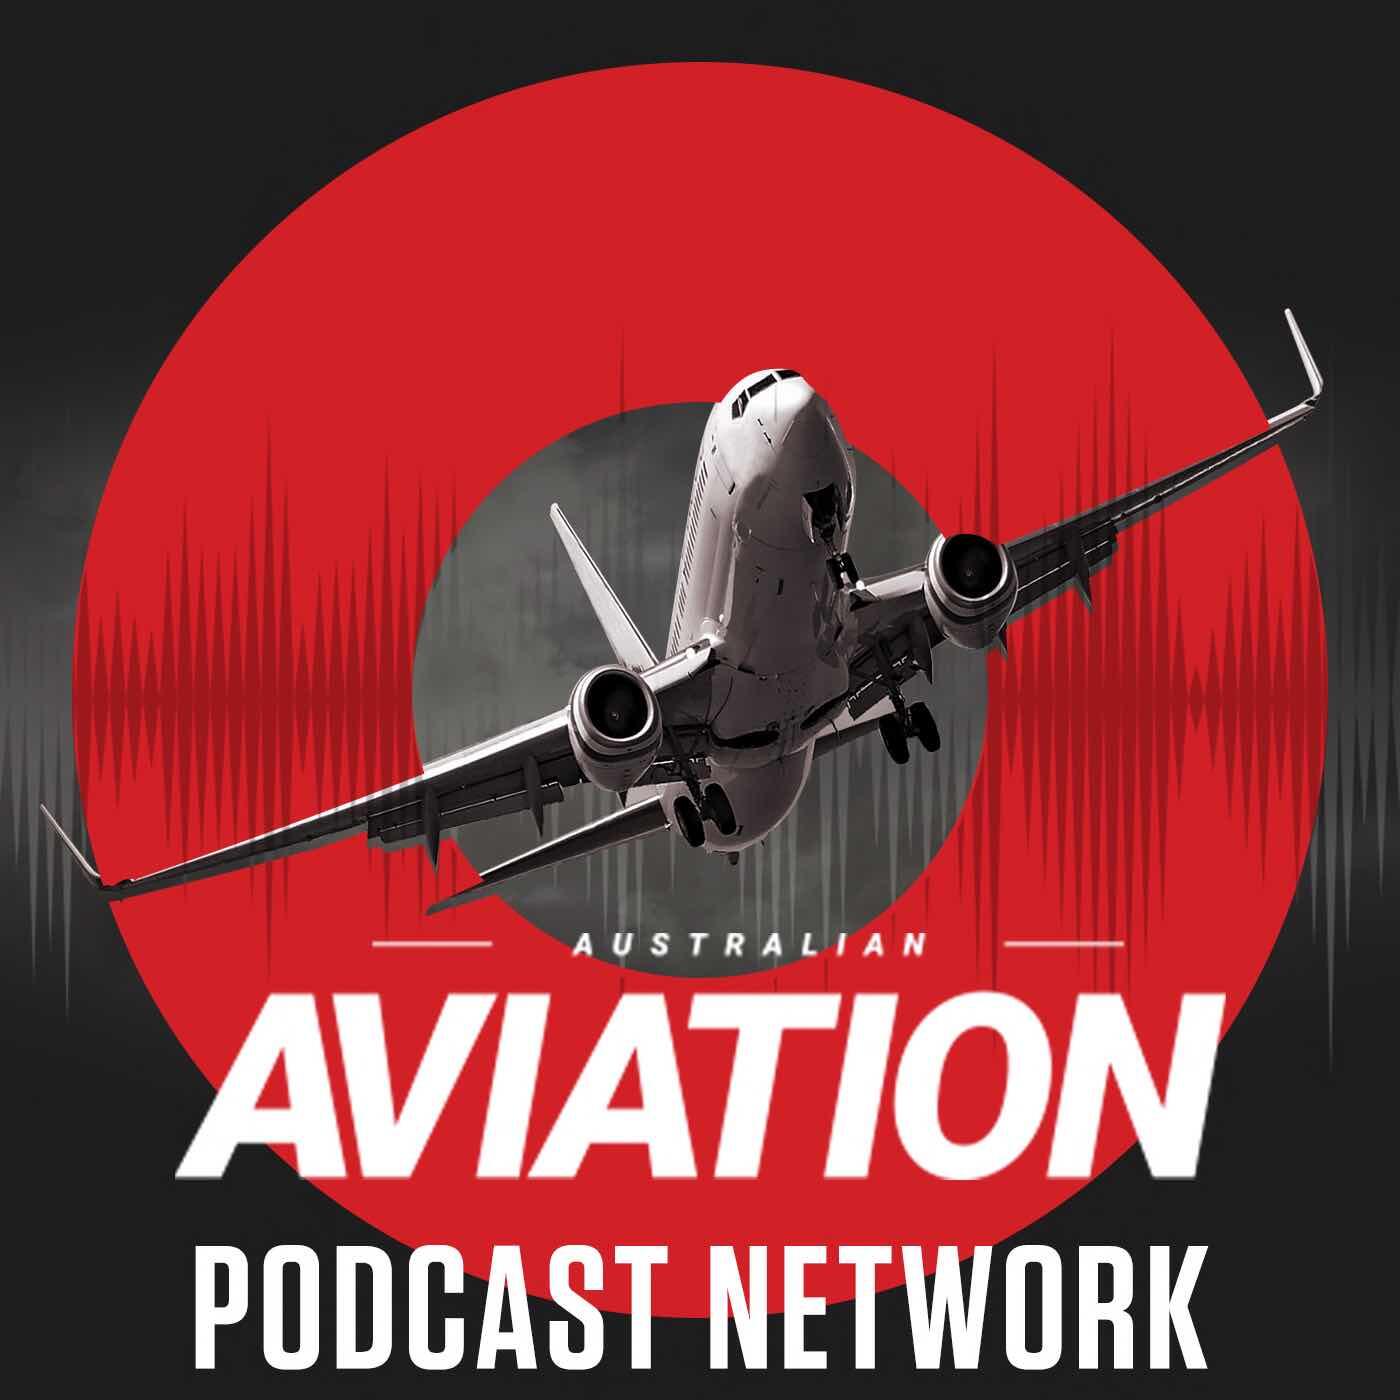 Aircraft radio. Aviation Radio communication.